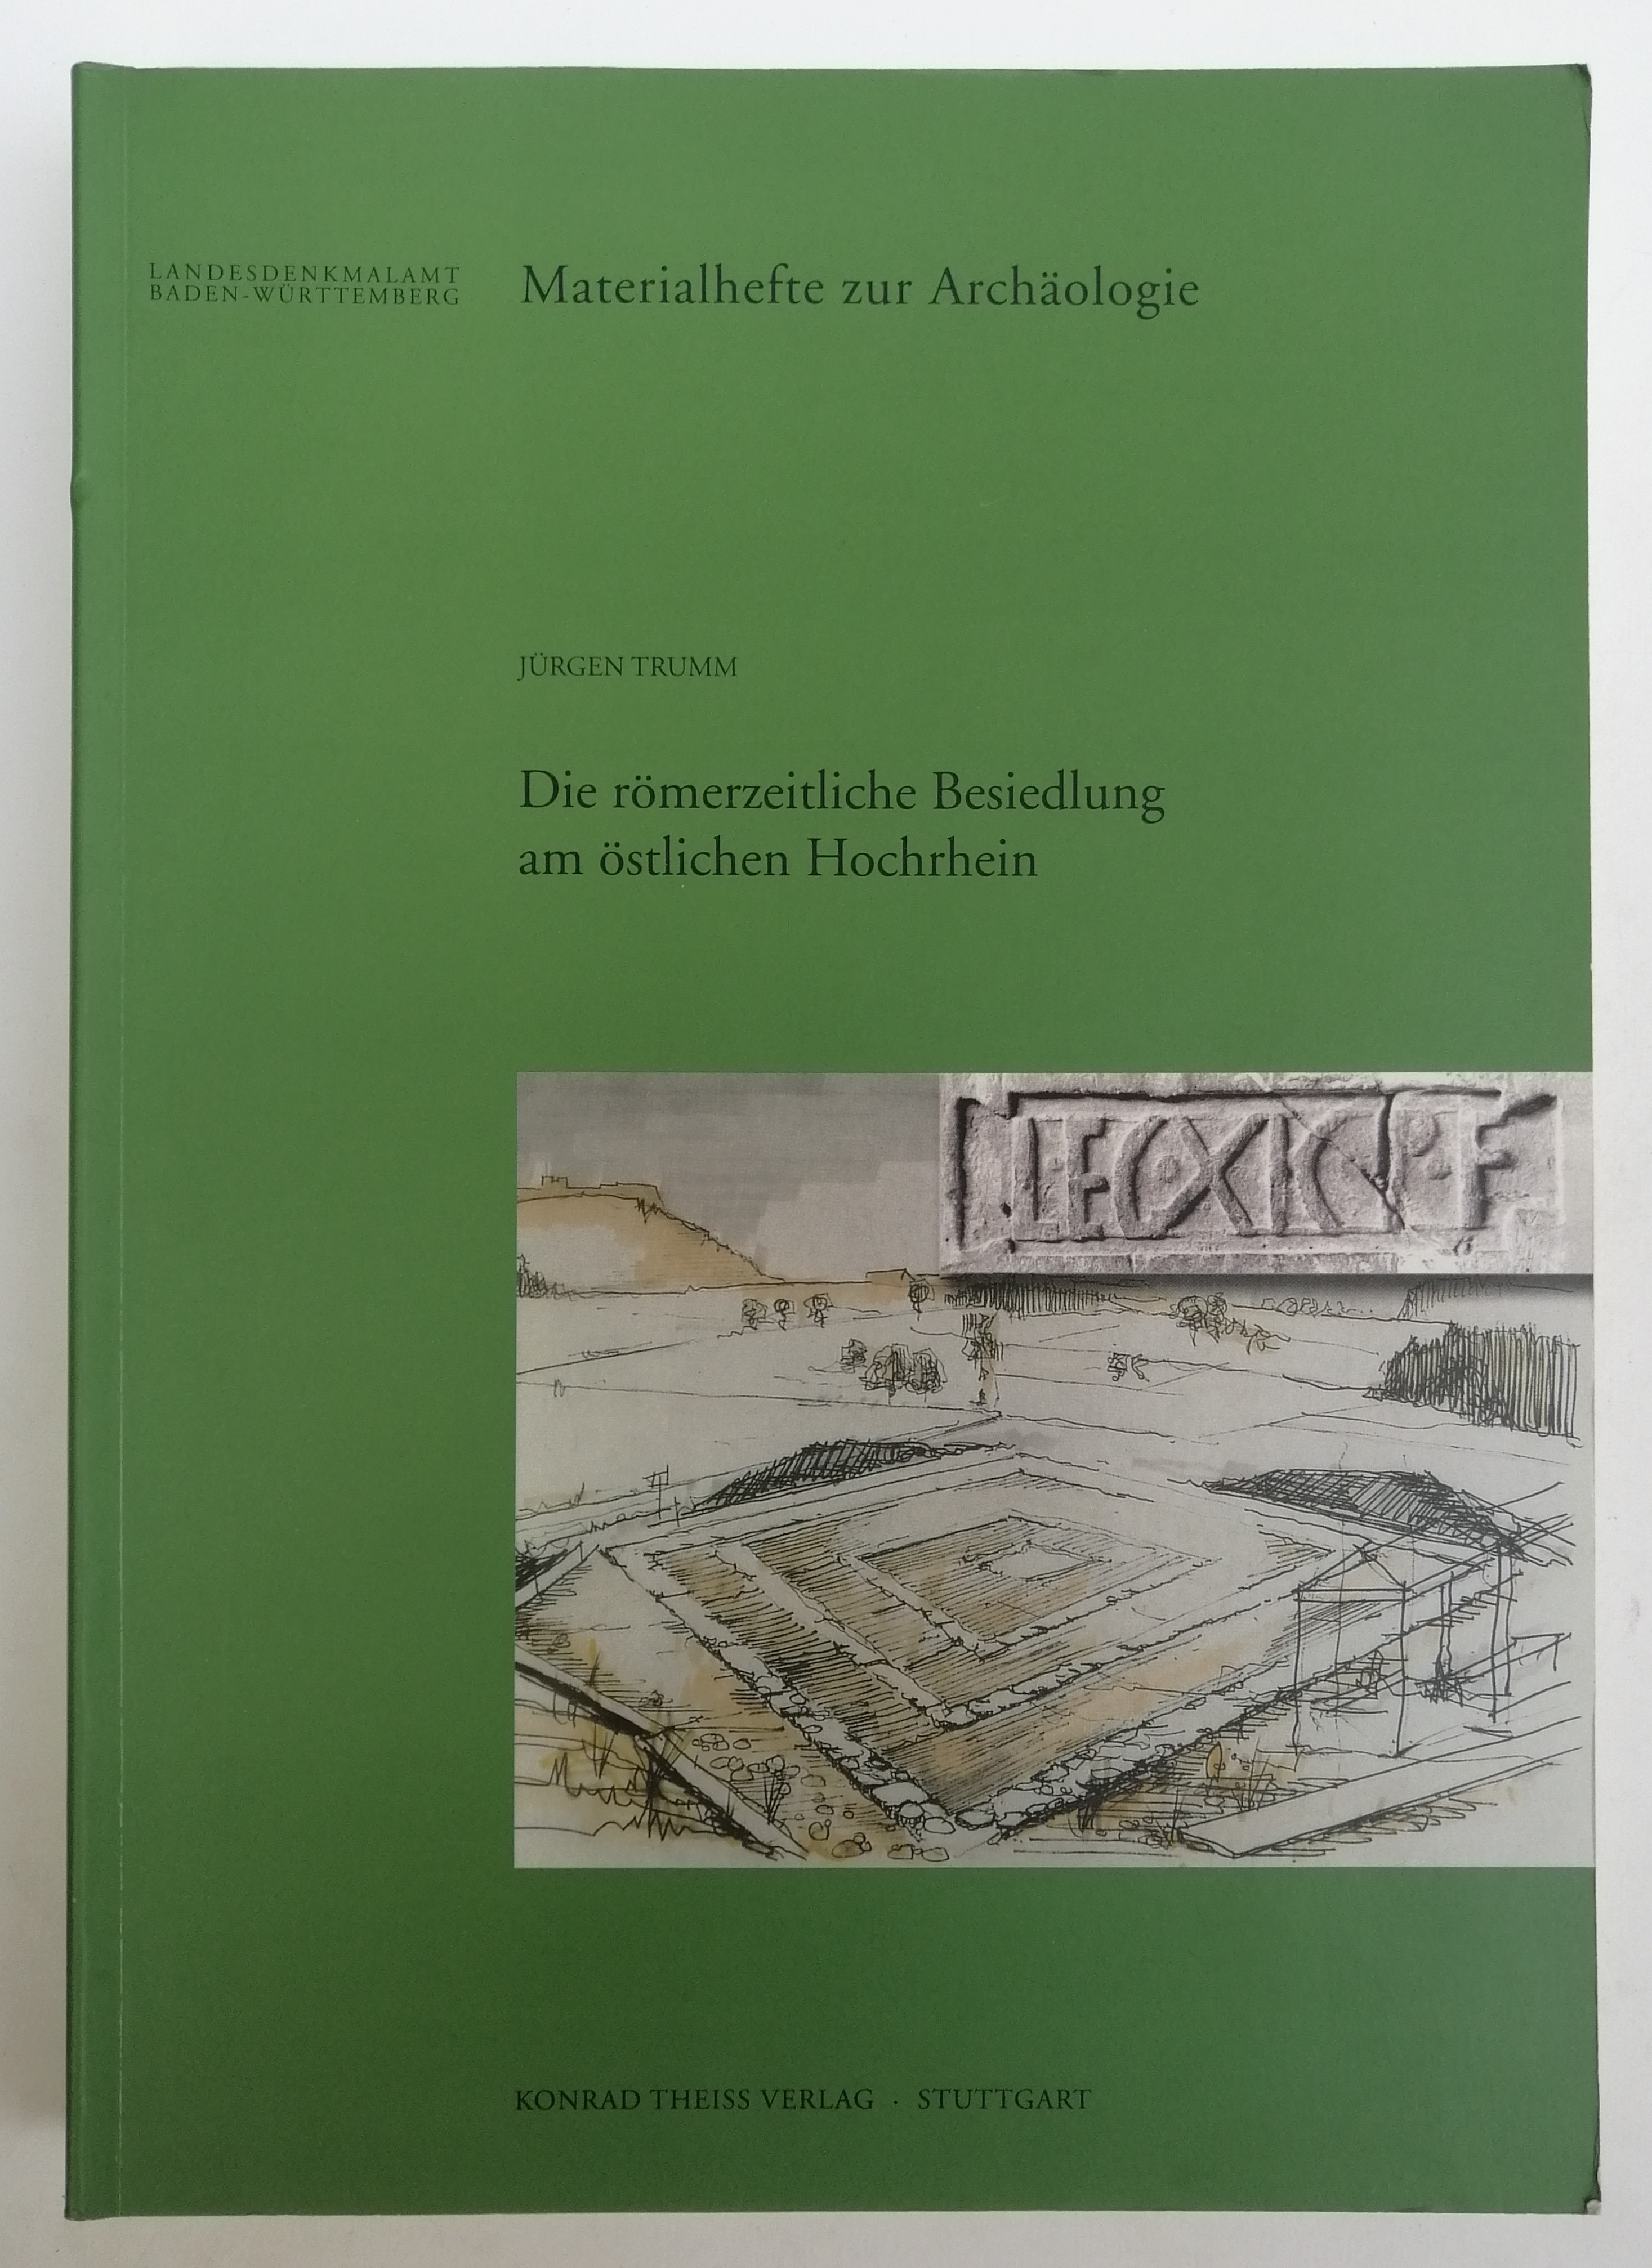 Die römerzeitliche Besiedlung am östlichen Hochrhein (50 v. Chr. - 450 n. Chr.). Mit 64 Abb. im Text, 108 Tafeln u. 2 Beilagen - Trumm, Jürgen